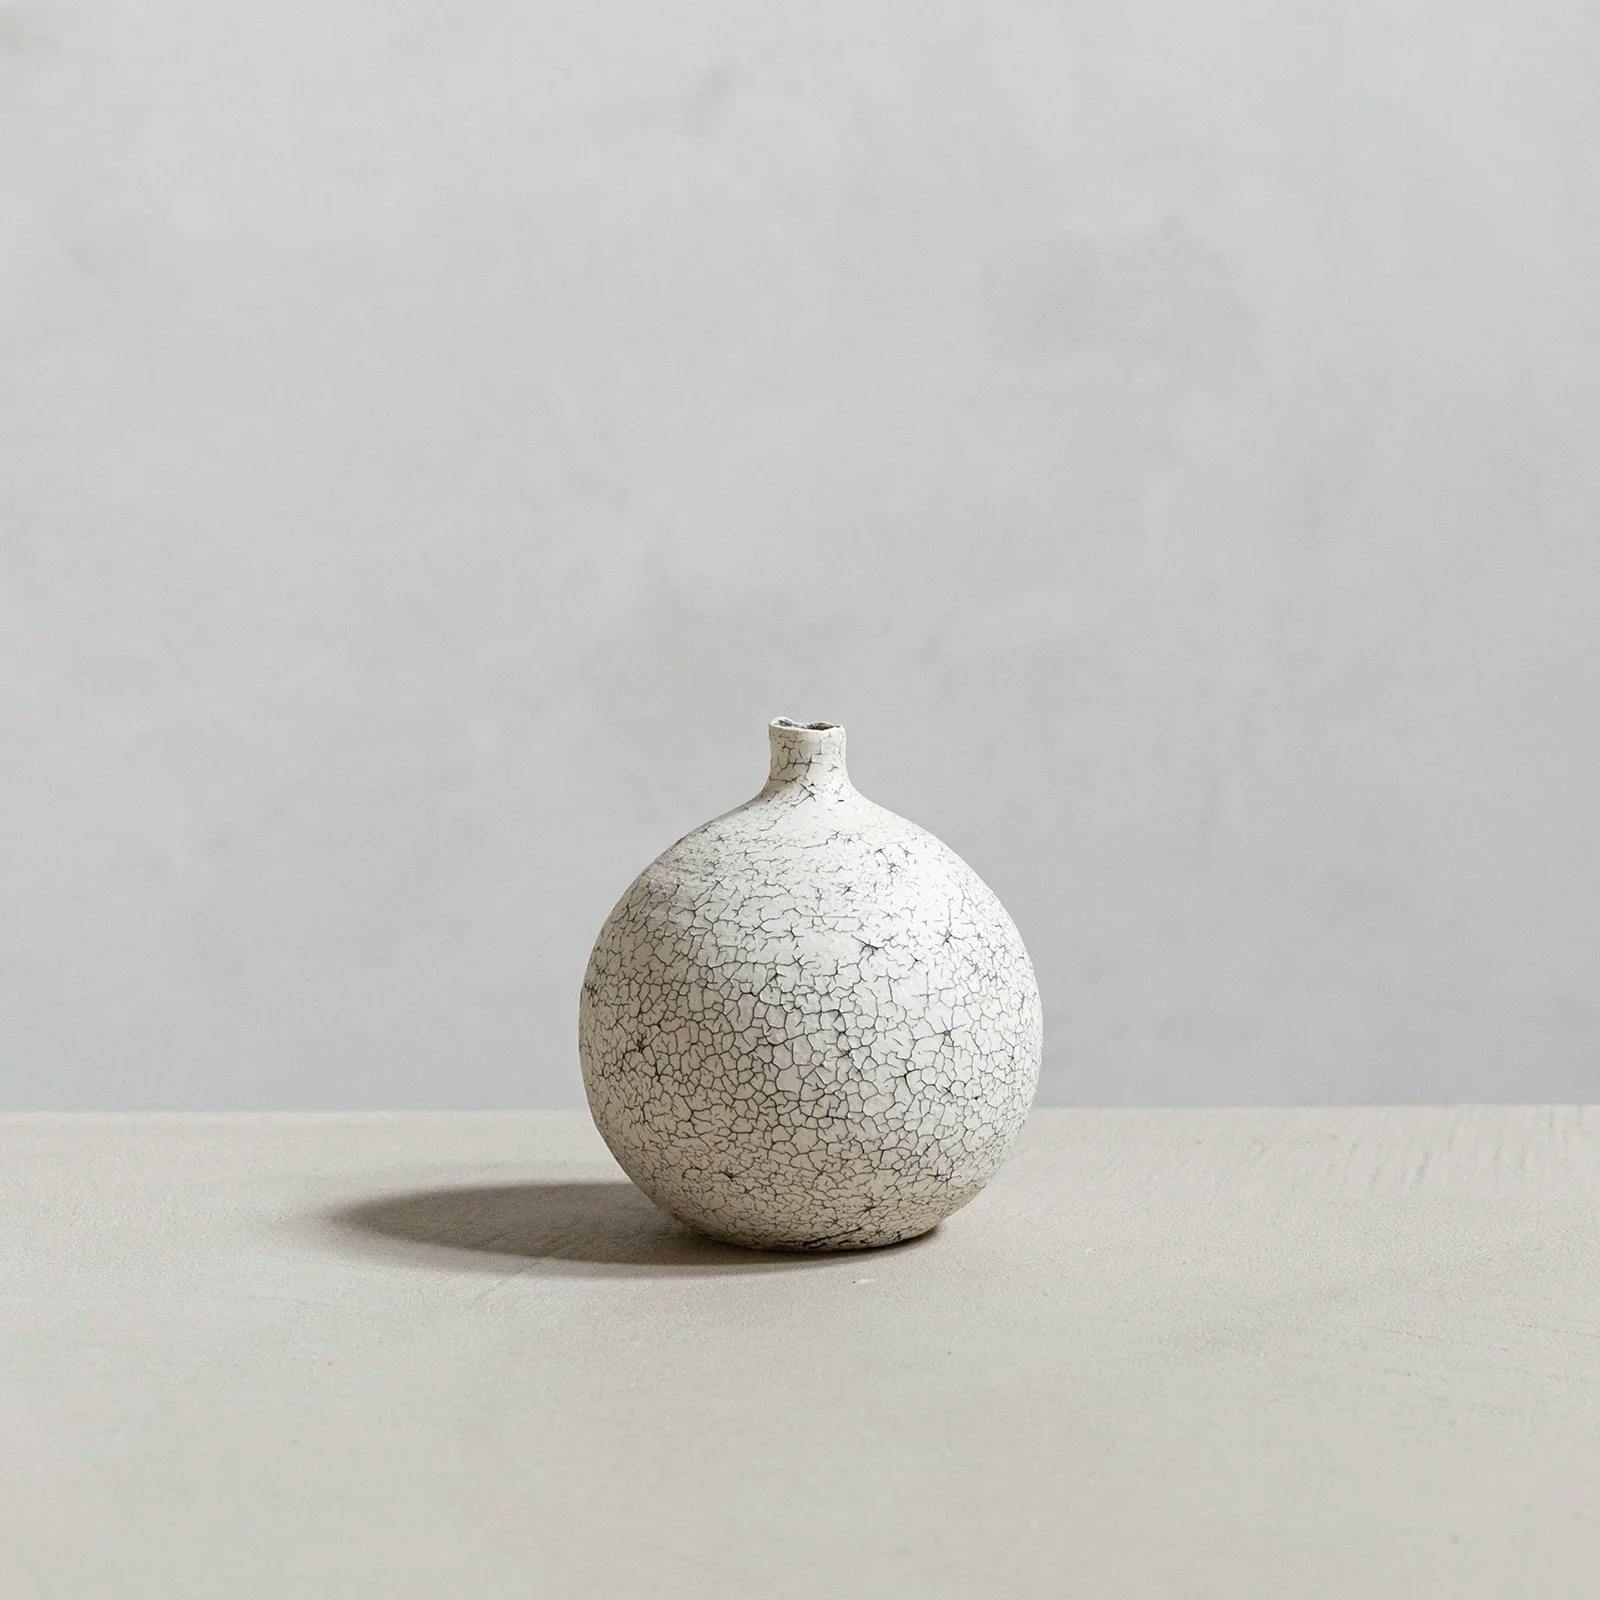 Image of ceramic vase